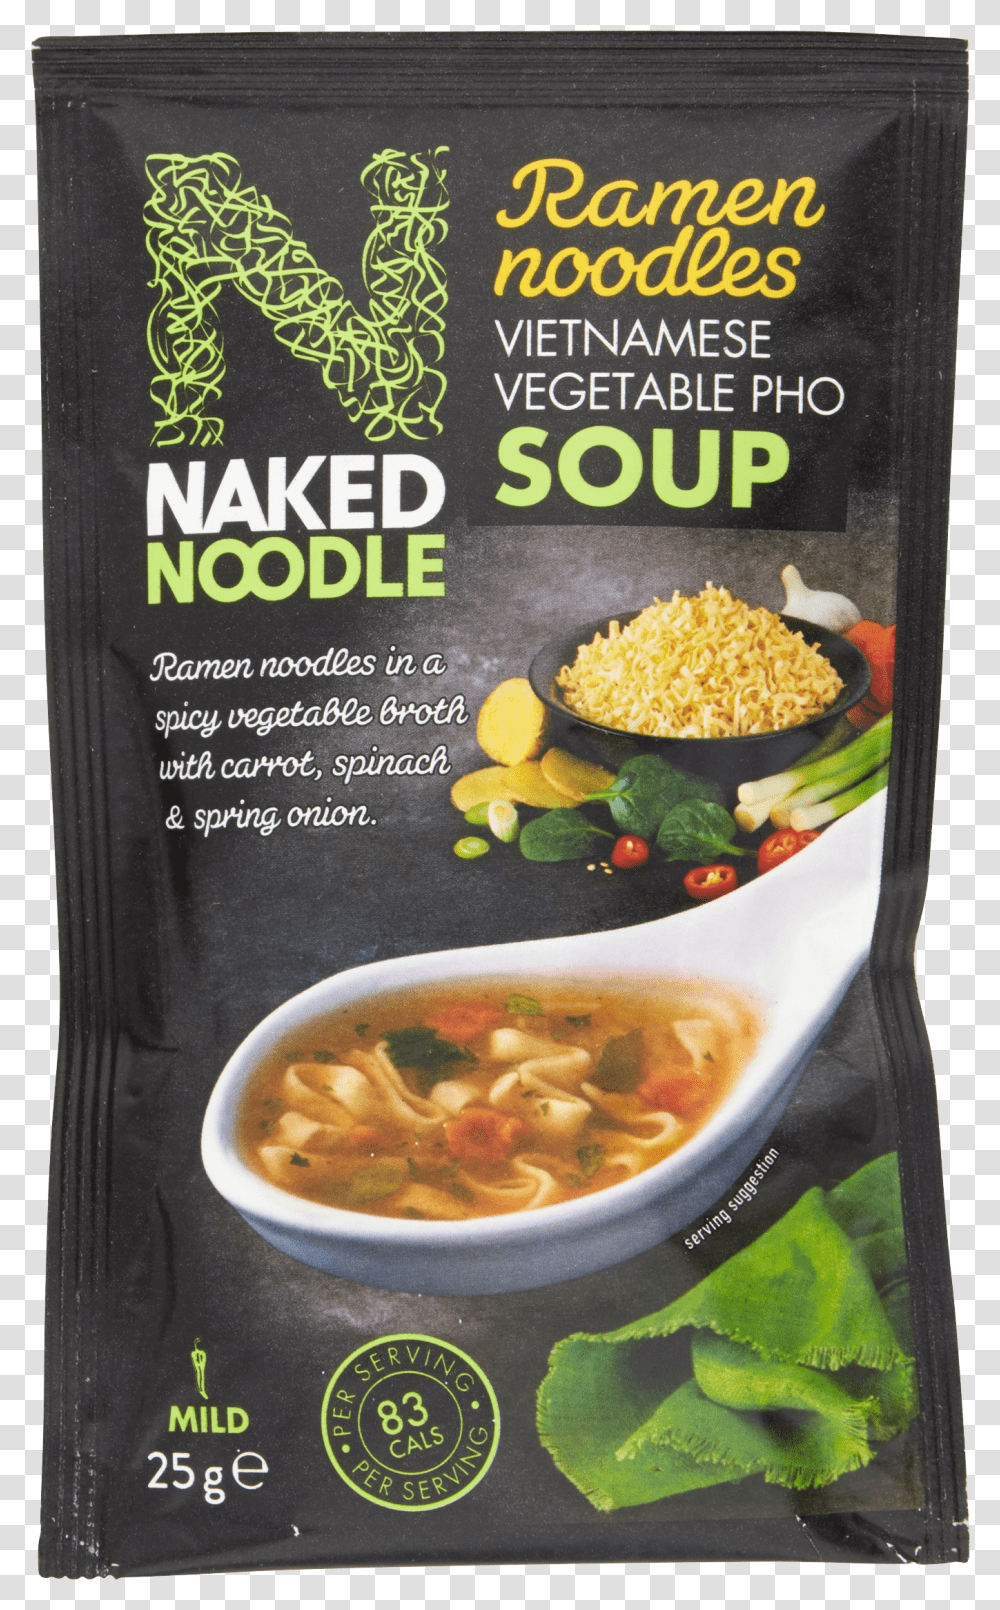 T70 Naked Noodle Ramen Noodles Vietnamese Vegetable Pho Transparent Png